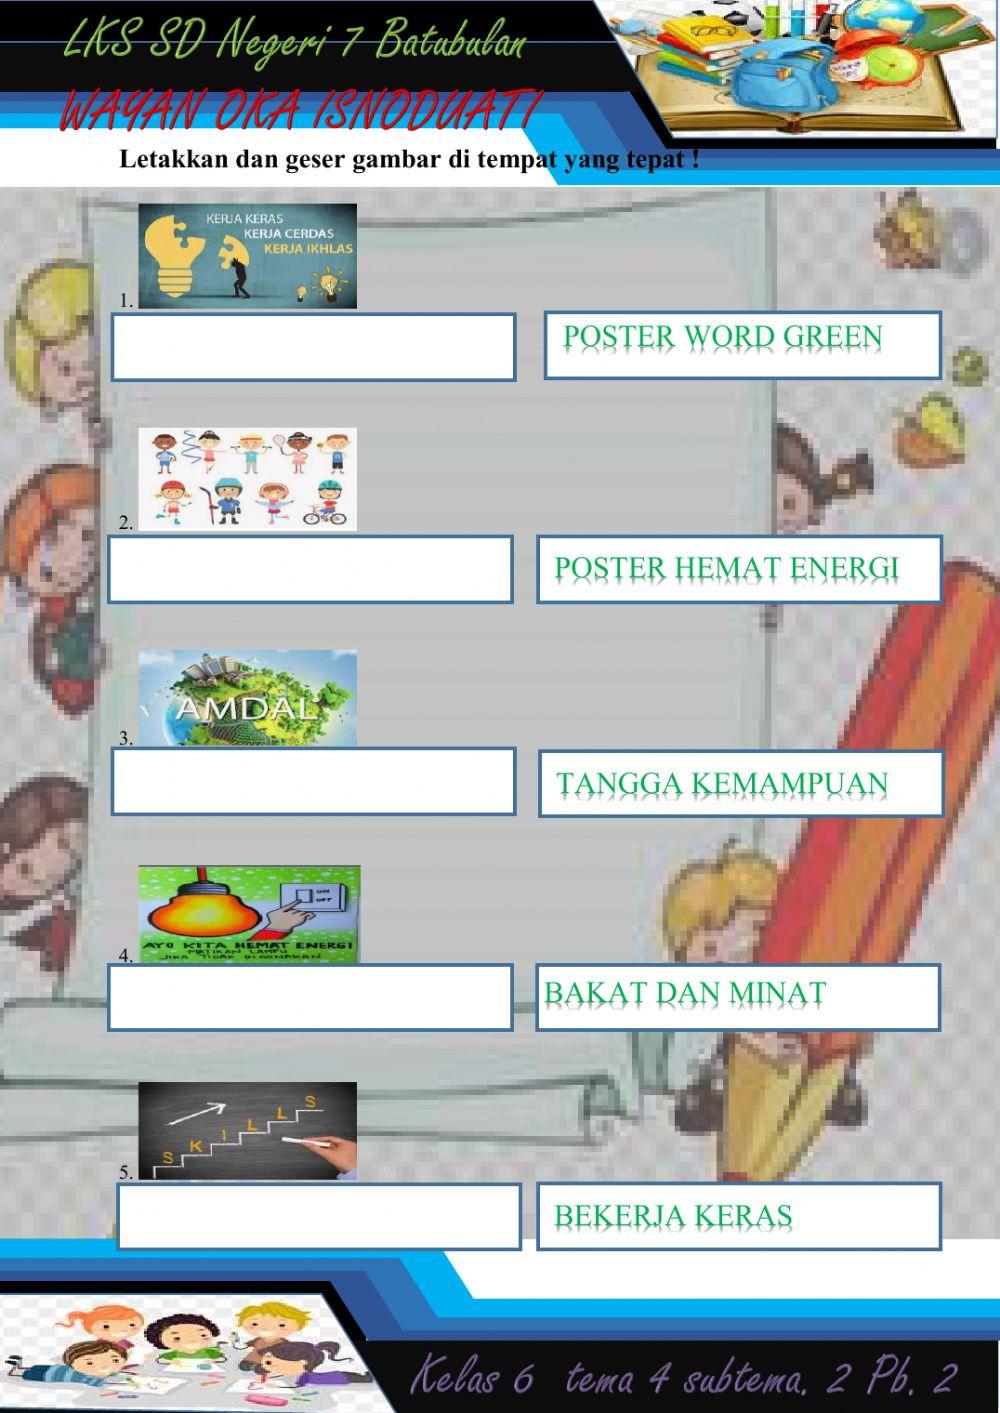 LEMBAR KERJA SISWA kelas 6 tema 4 potensi diri dan poster